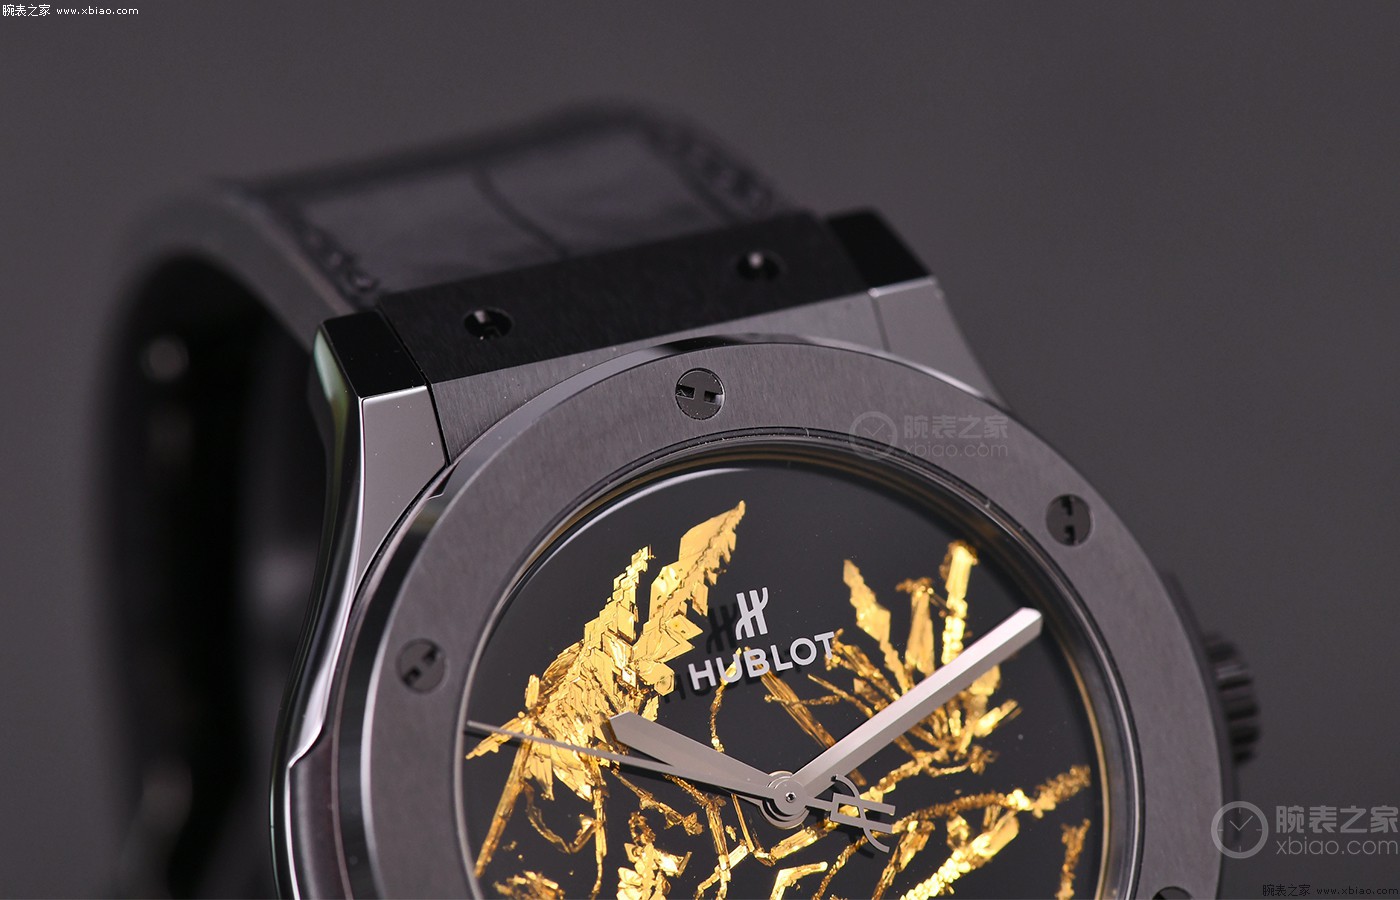 结合的造型艺术 品评宇舶表传统结合黄金晶体腕表